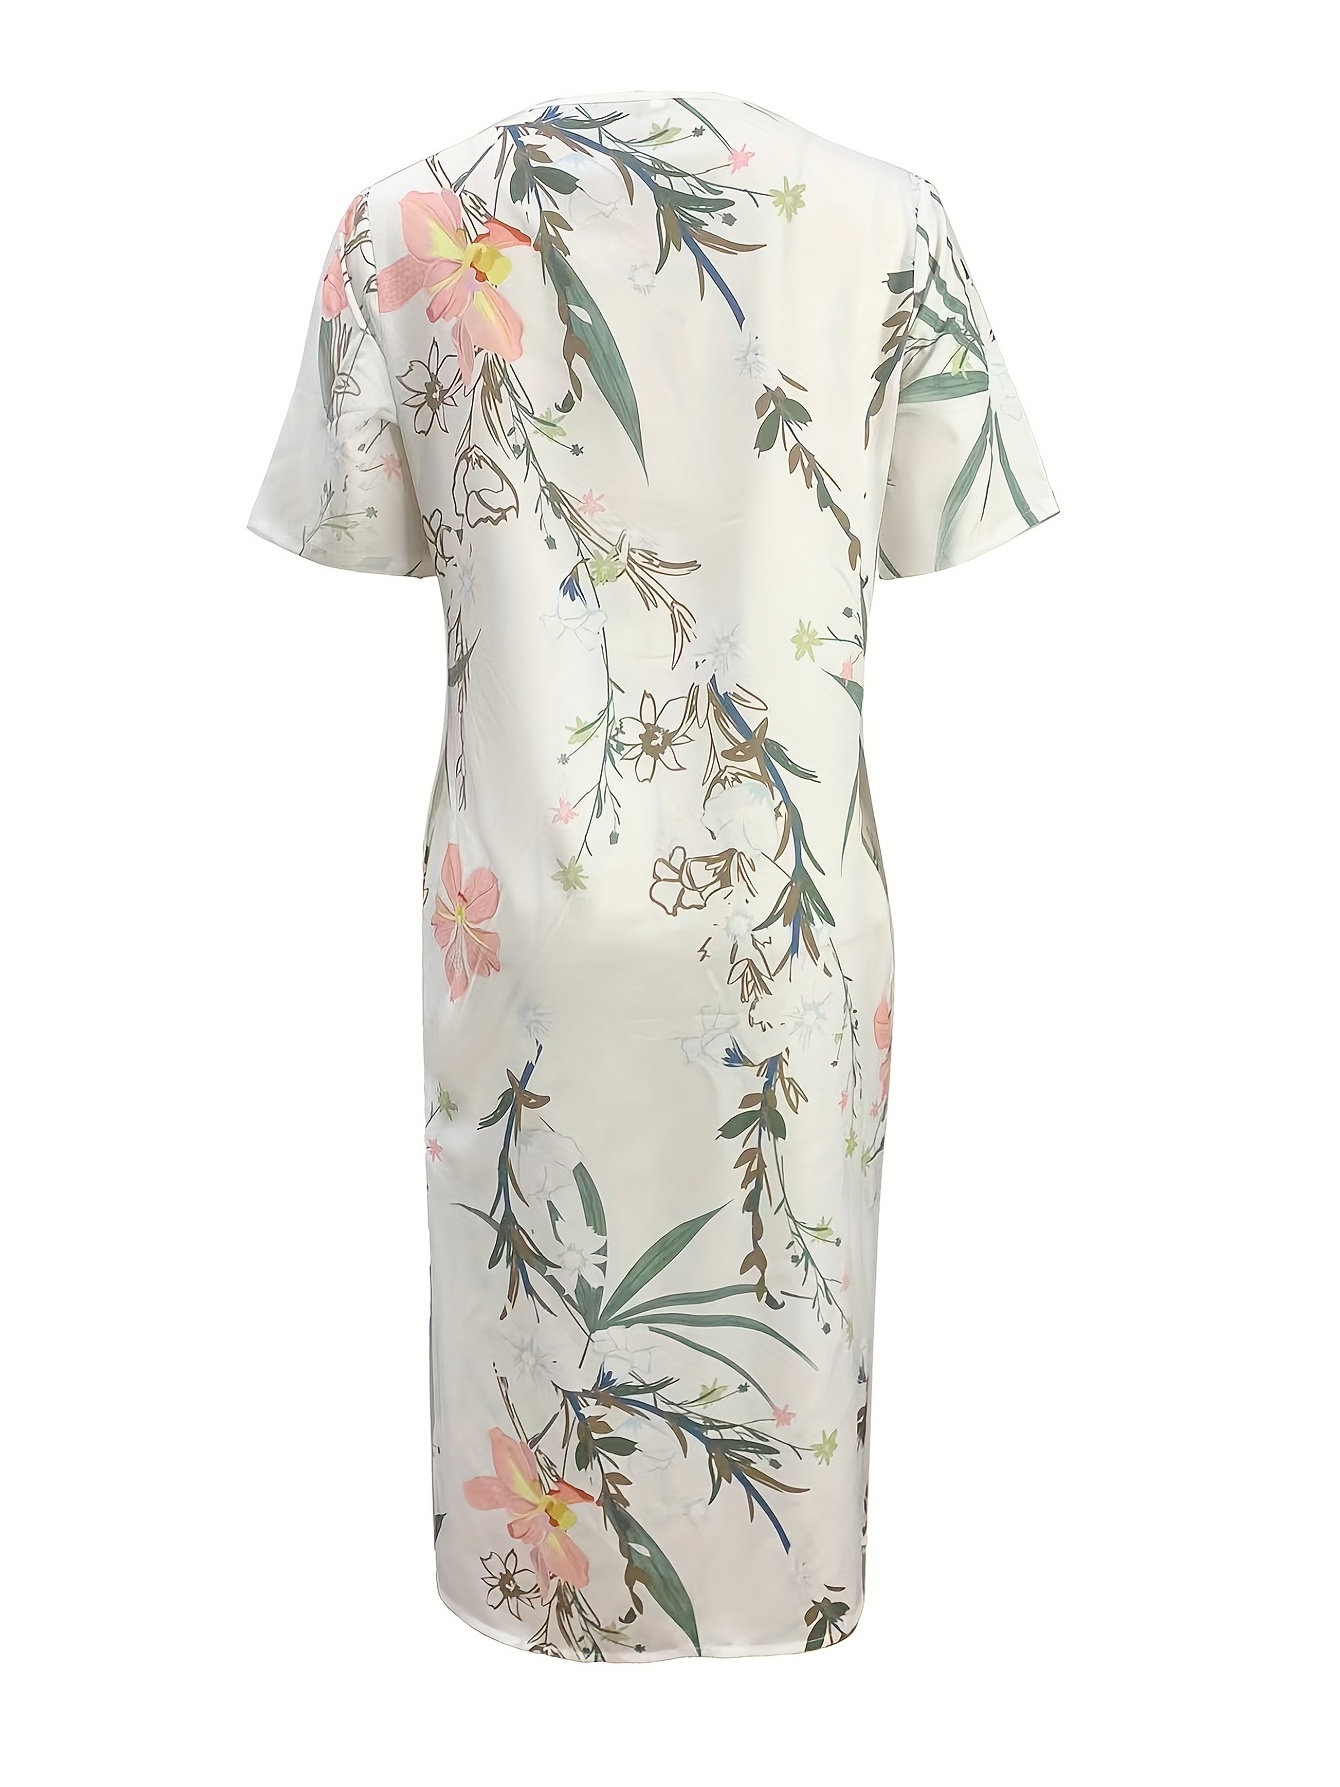 floral print high waist dress casual crew neck short sleeve summer dress womens clothing details 16